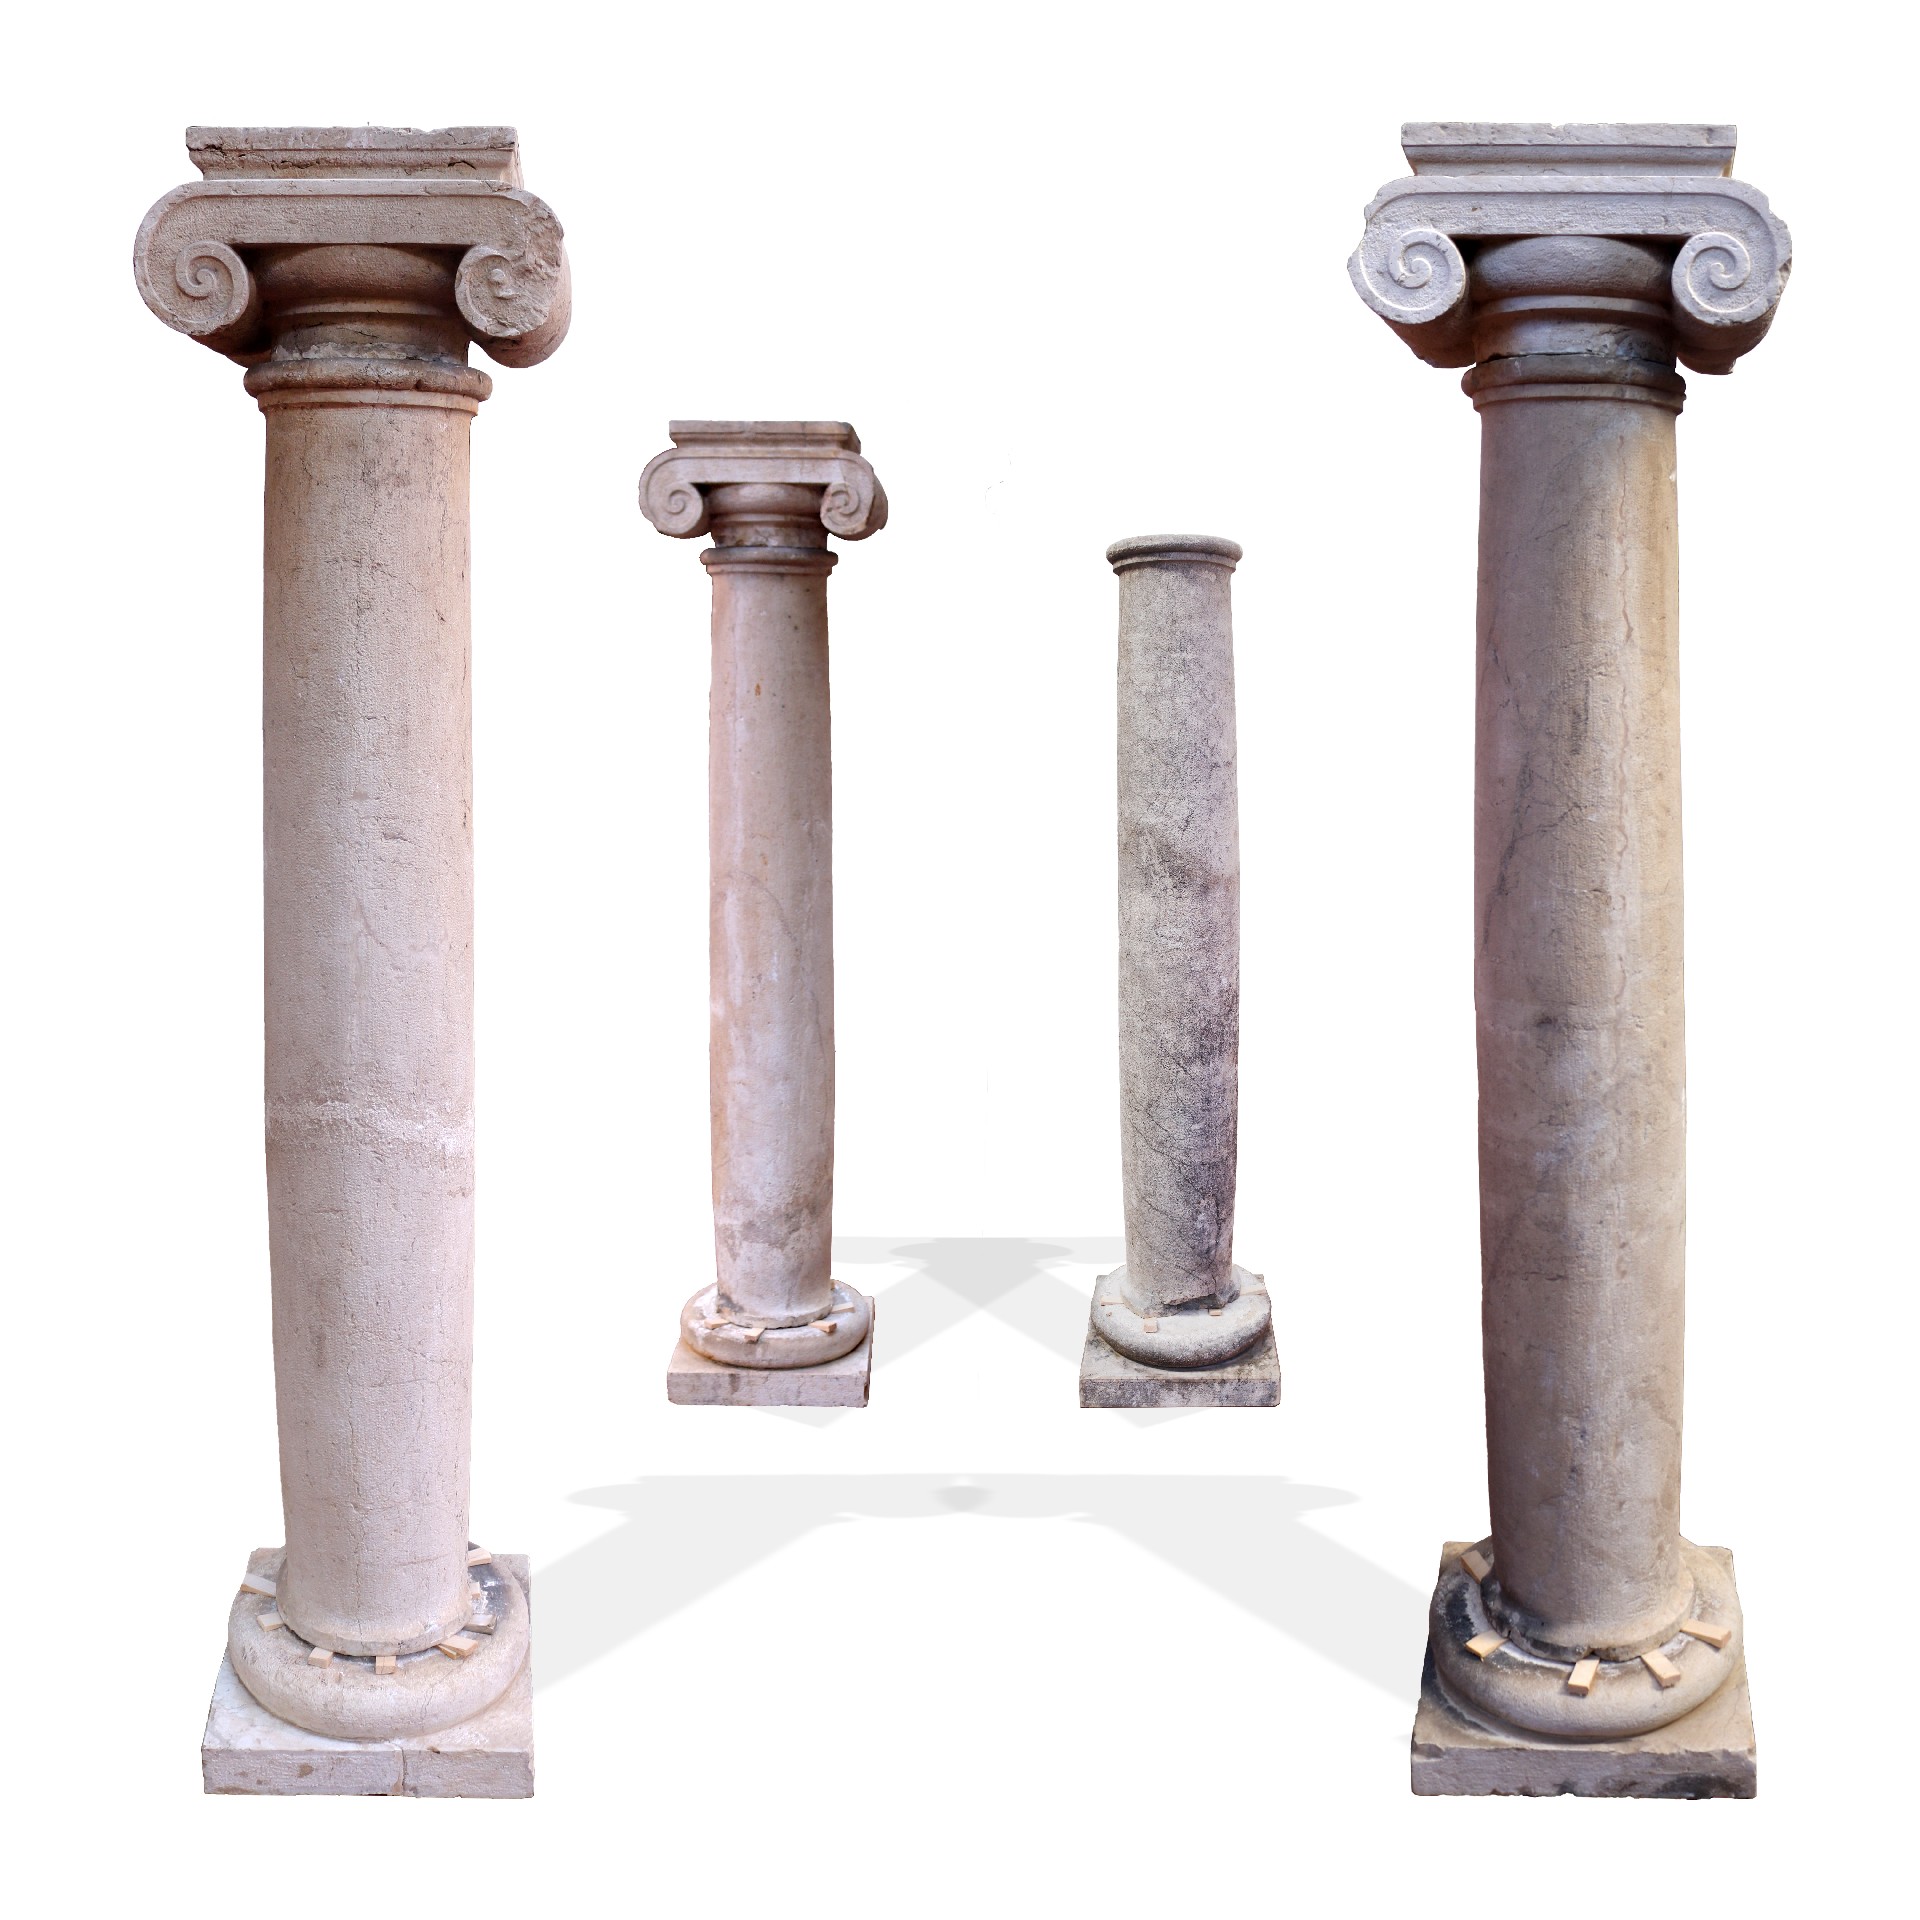 Quattro colonne in pietra. - Colonne antiche - Architettura - Prodotti - Antichità Fiorillo